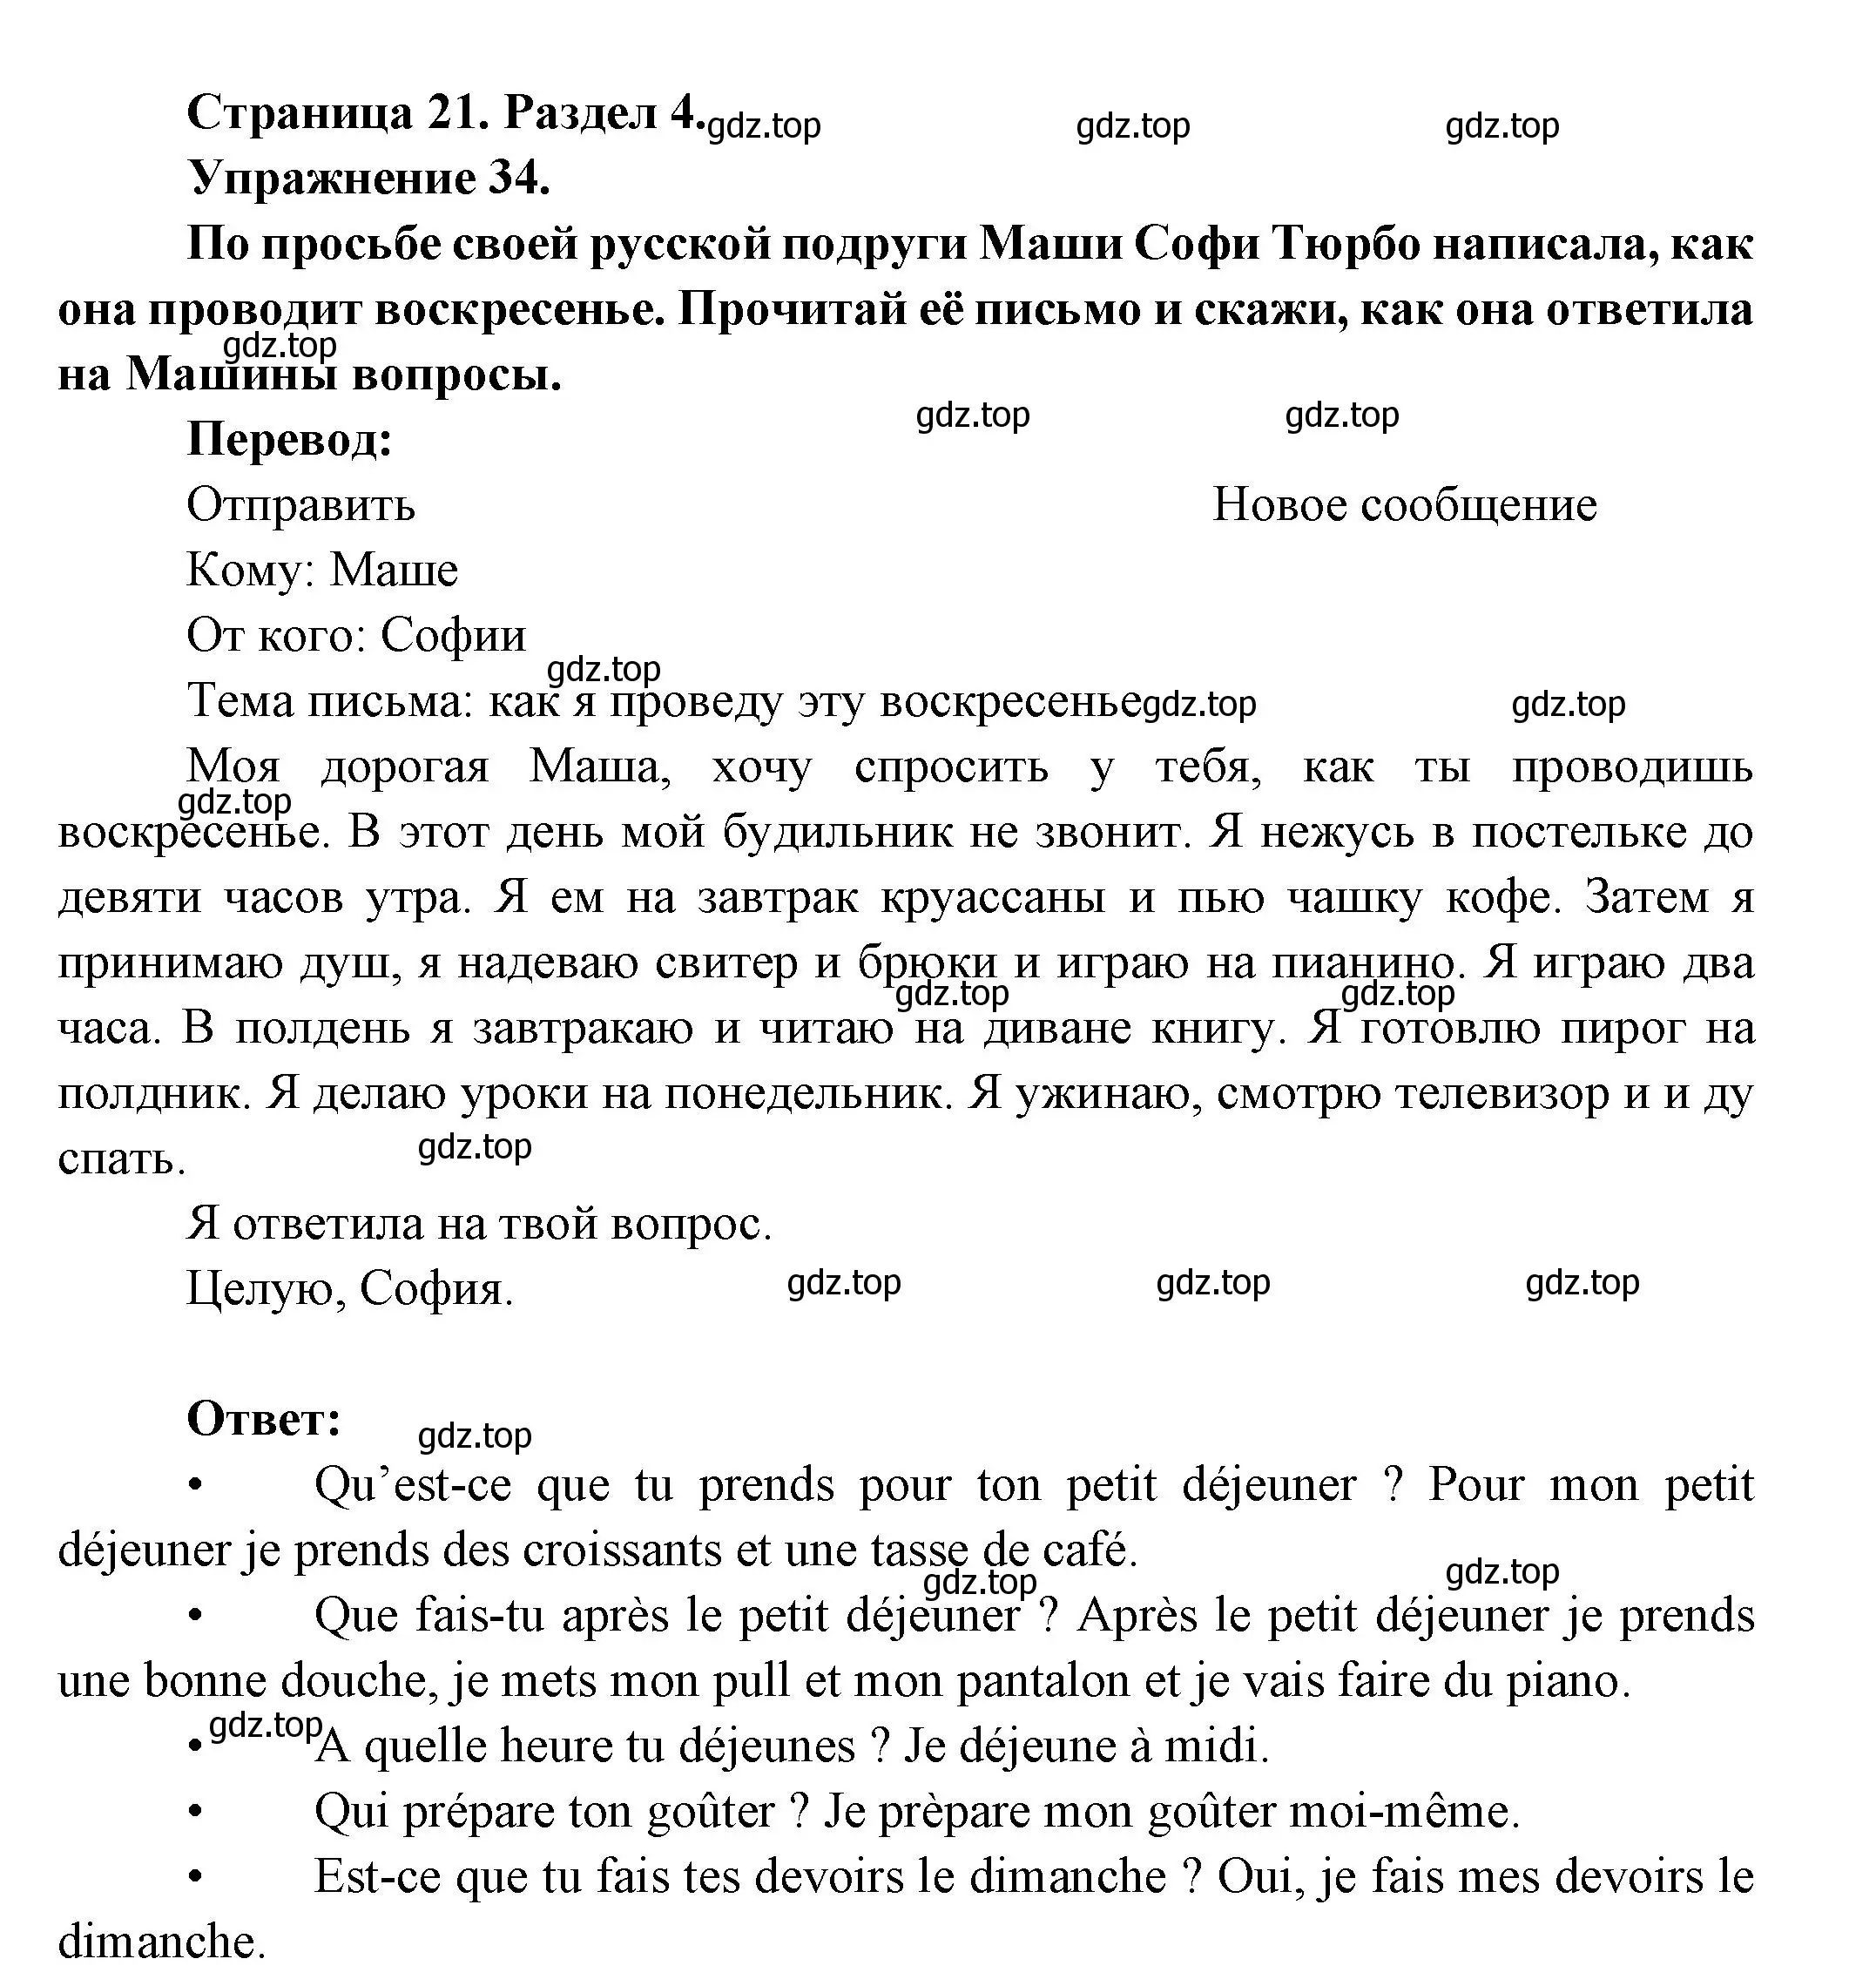 Решение номер 34 (страница 21) гдз по французскому языку 5 класс Береговская, Белосельская, учебник 2 часть